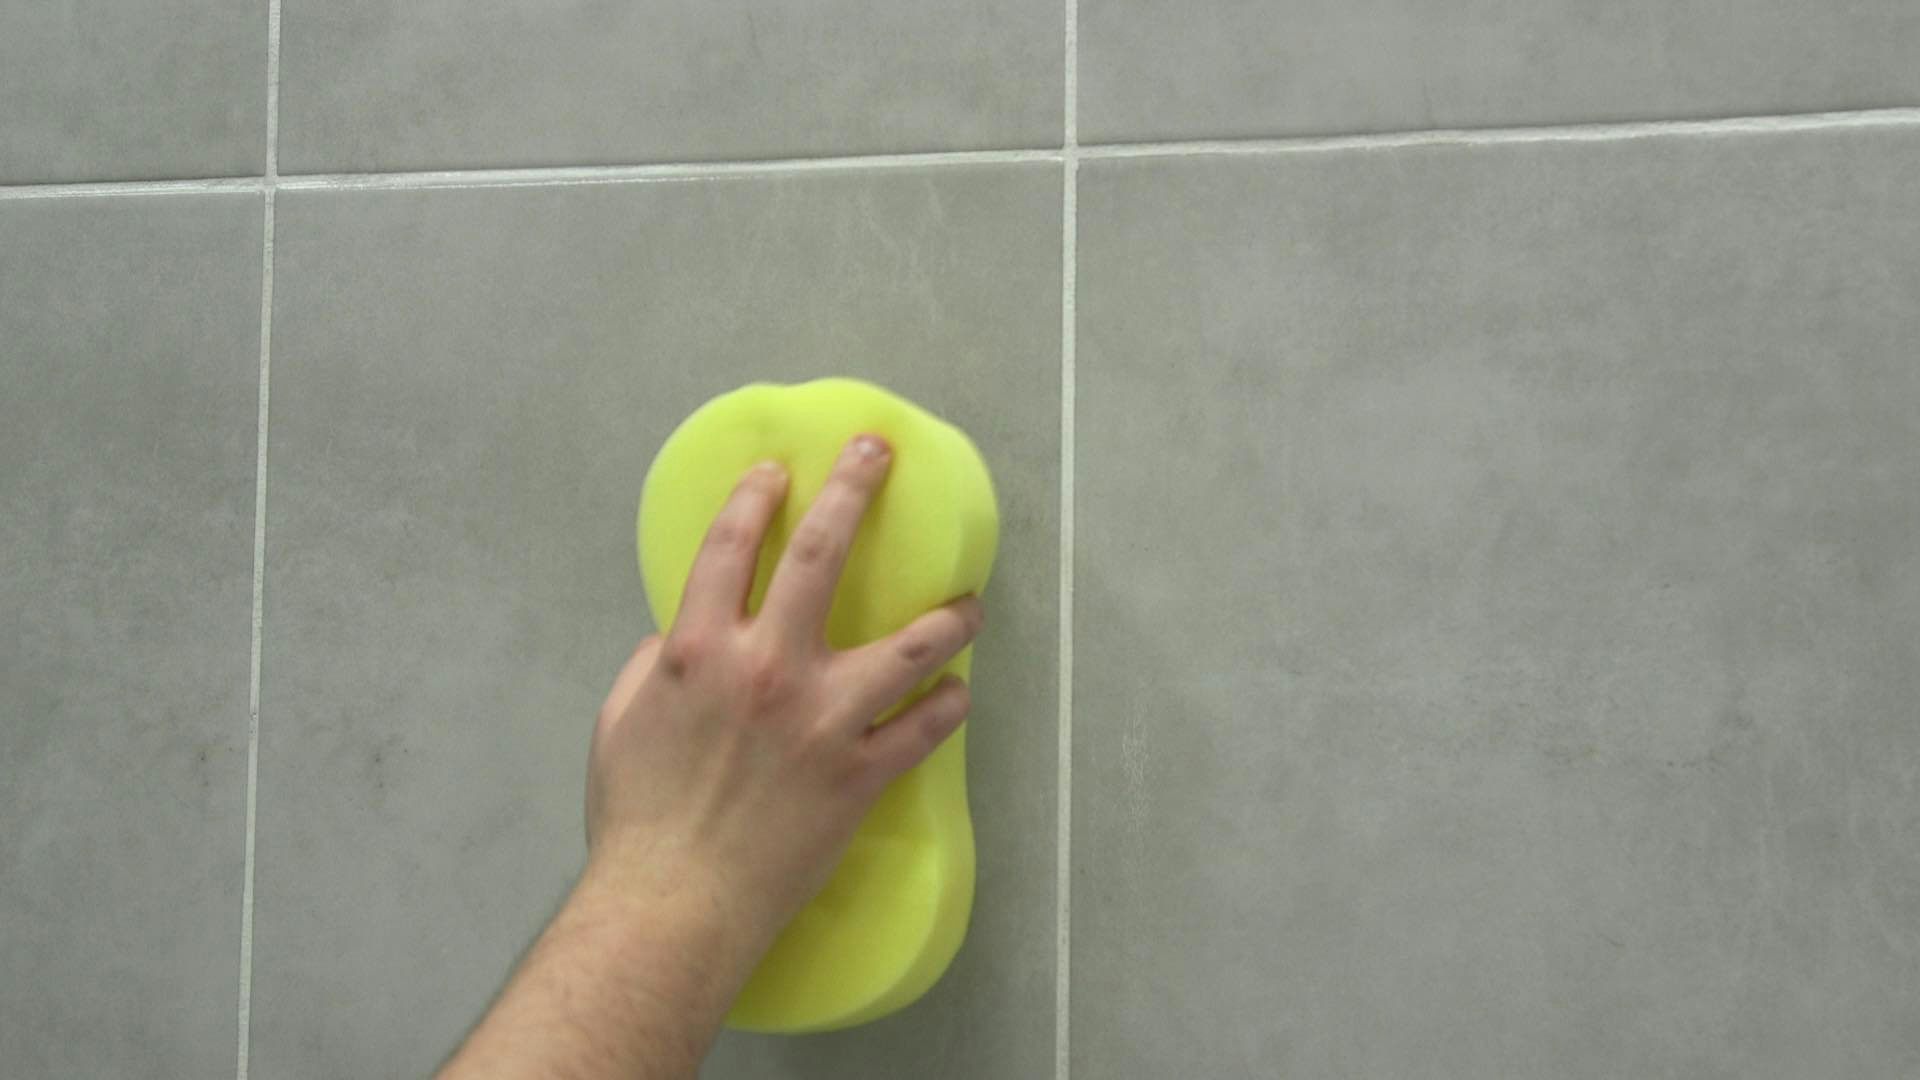 Sponging tiles